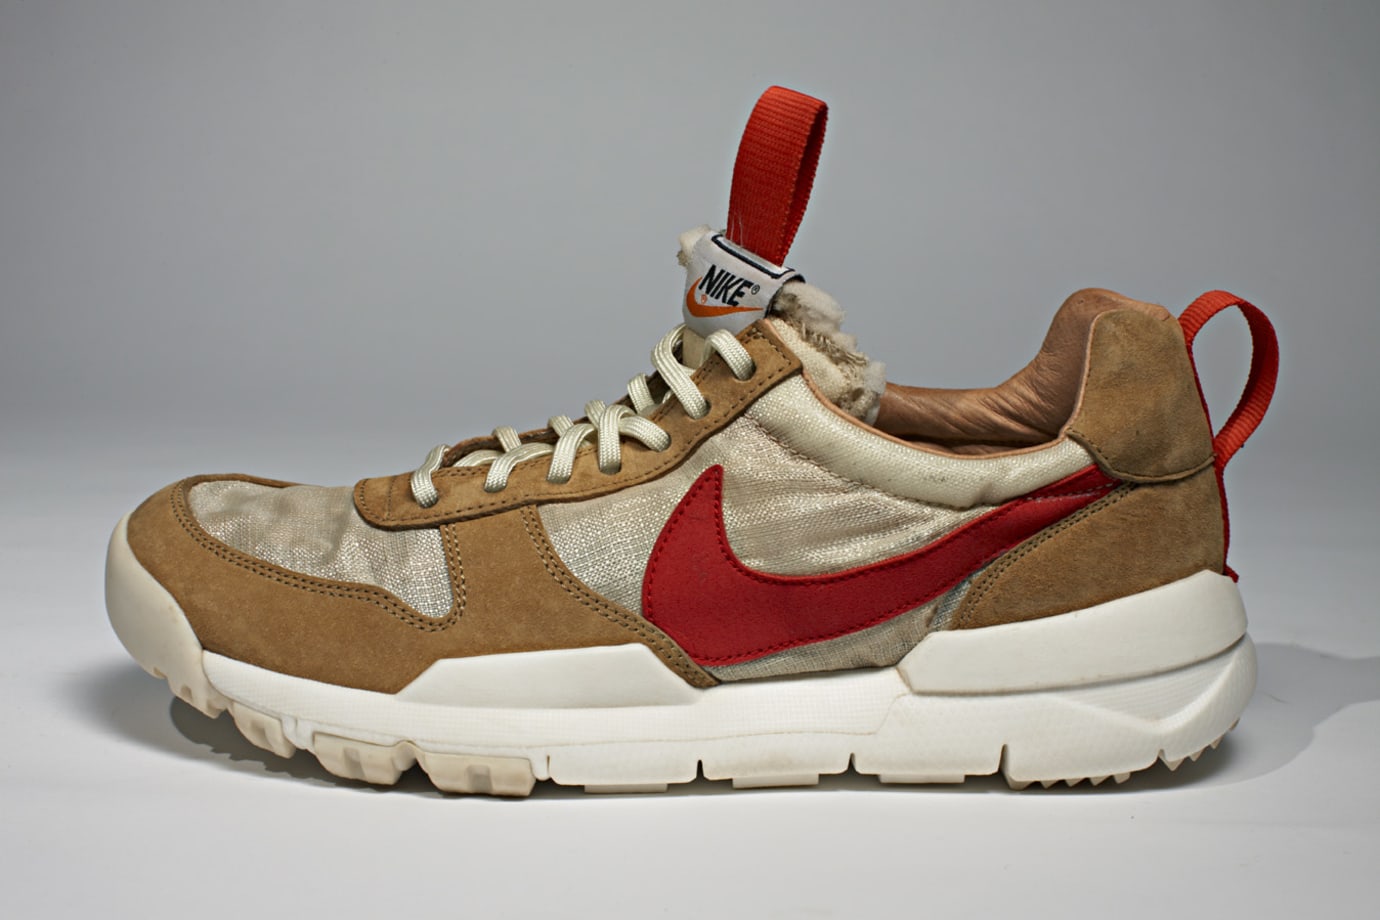 Nike Tom Sachs Mars Yard